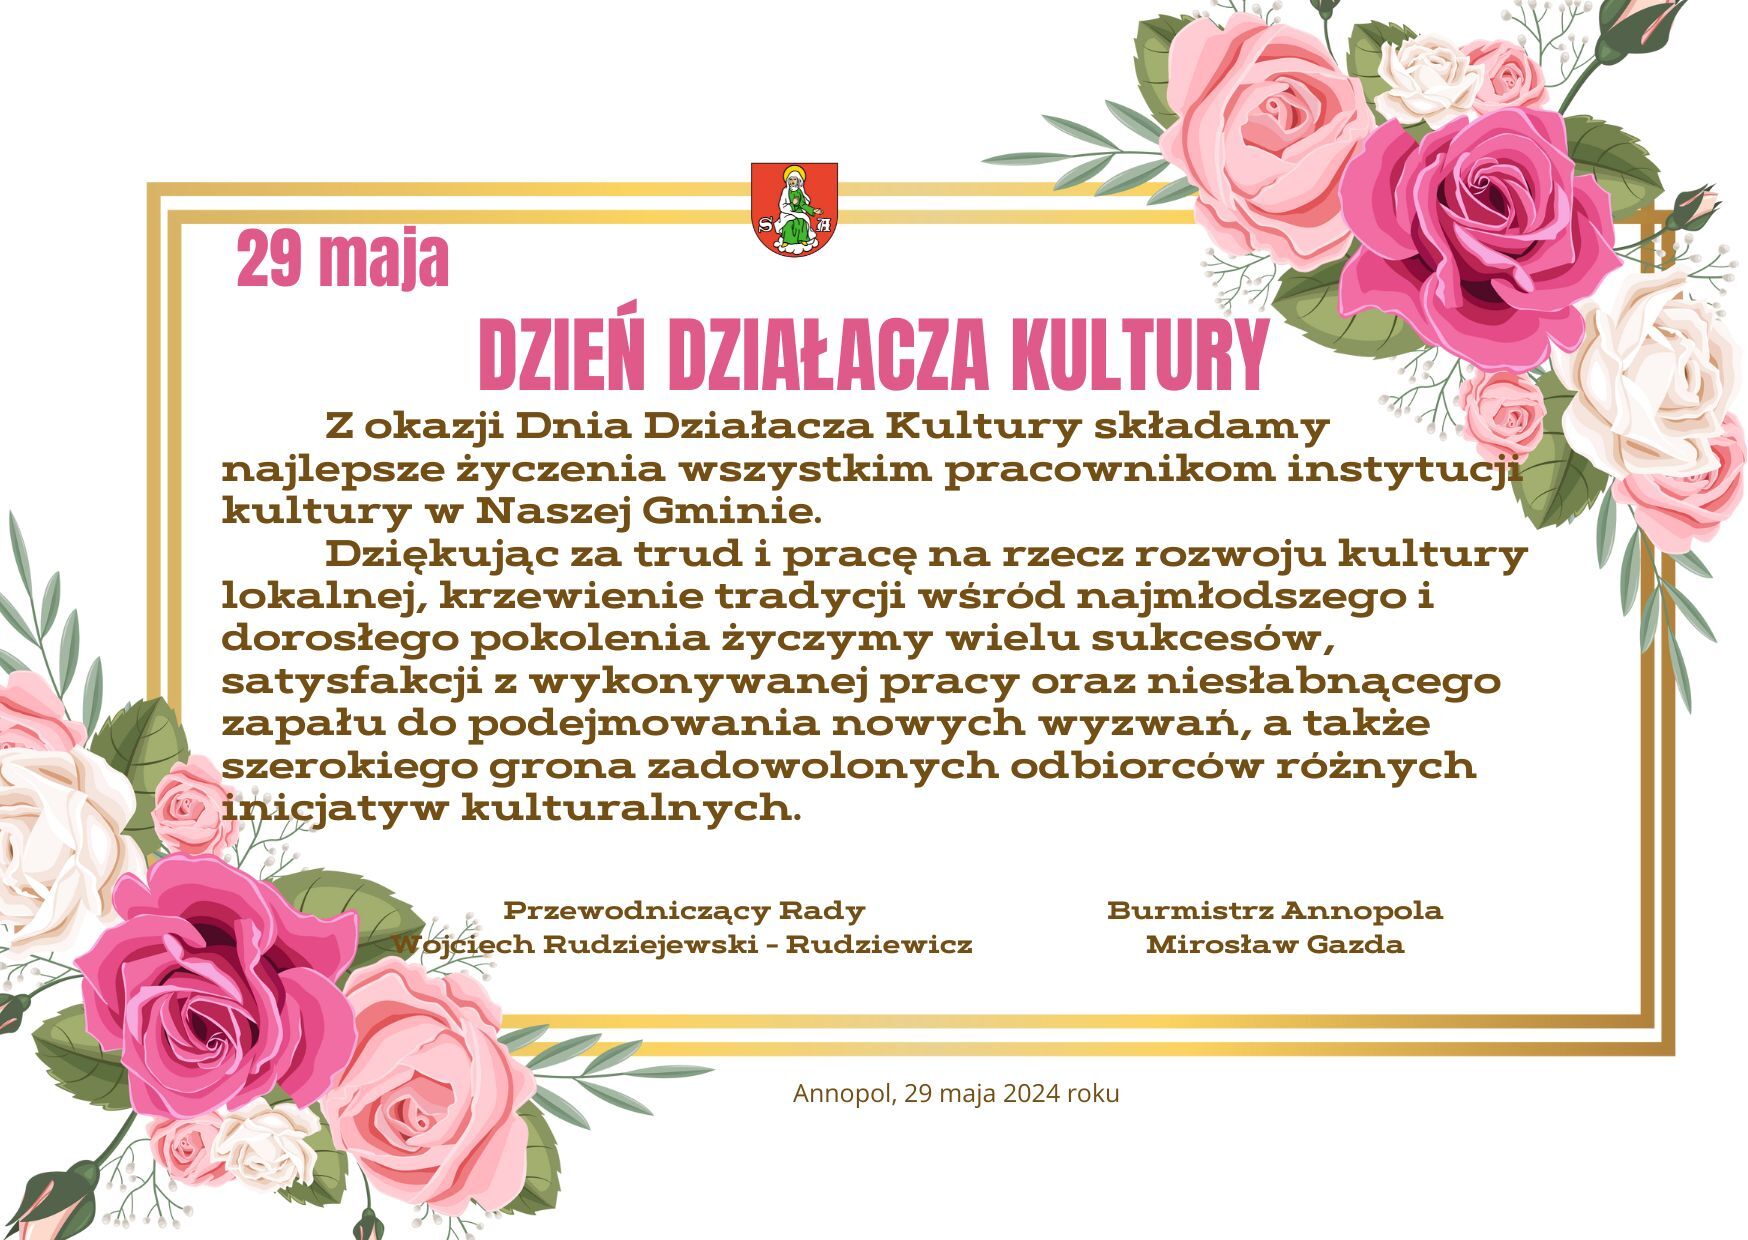 Opis alternatywny: Plakat wydarzenia "Dzień Działacza Kultury" w ramach kwadratowej ramki z kwiatowym motywem róż i złotego liścia. Tekst zaprasza do świętowania, wyróżnia gościa honorowego i zawiera datę oraz logo organizatora.